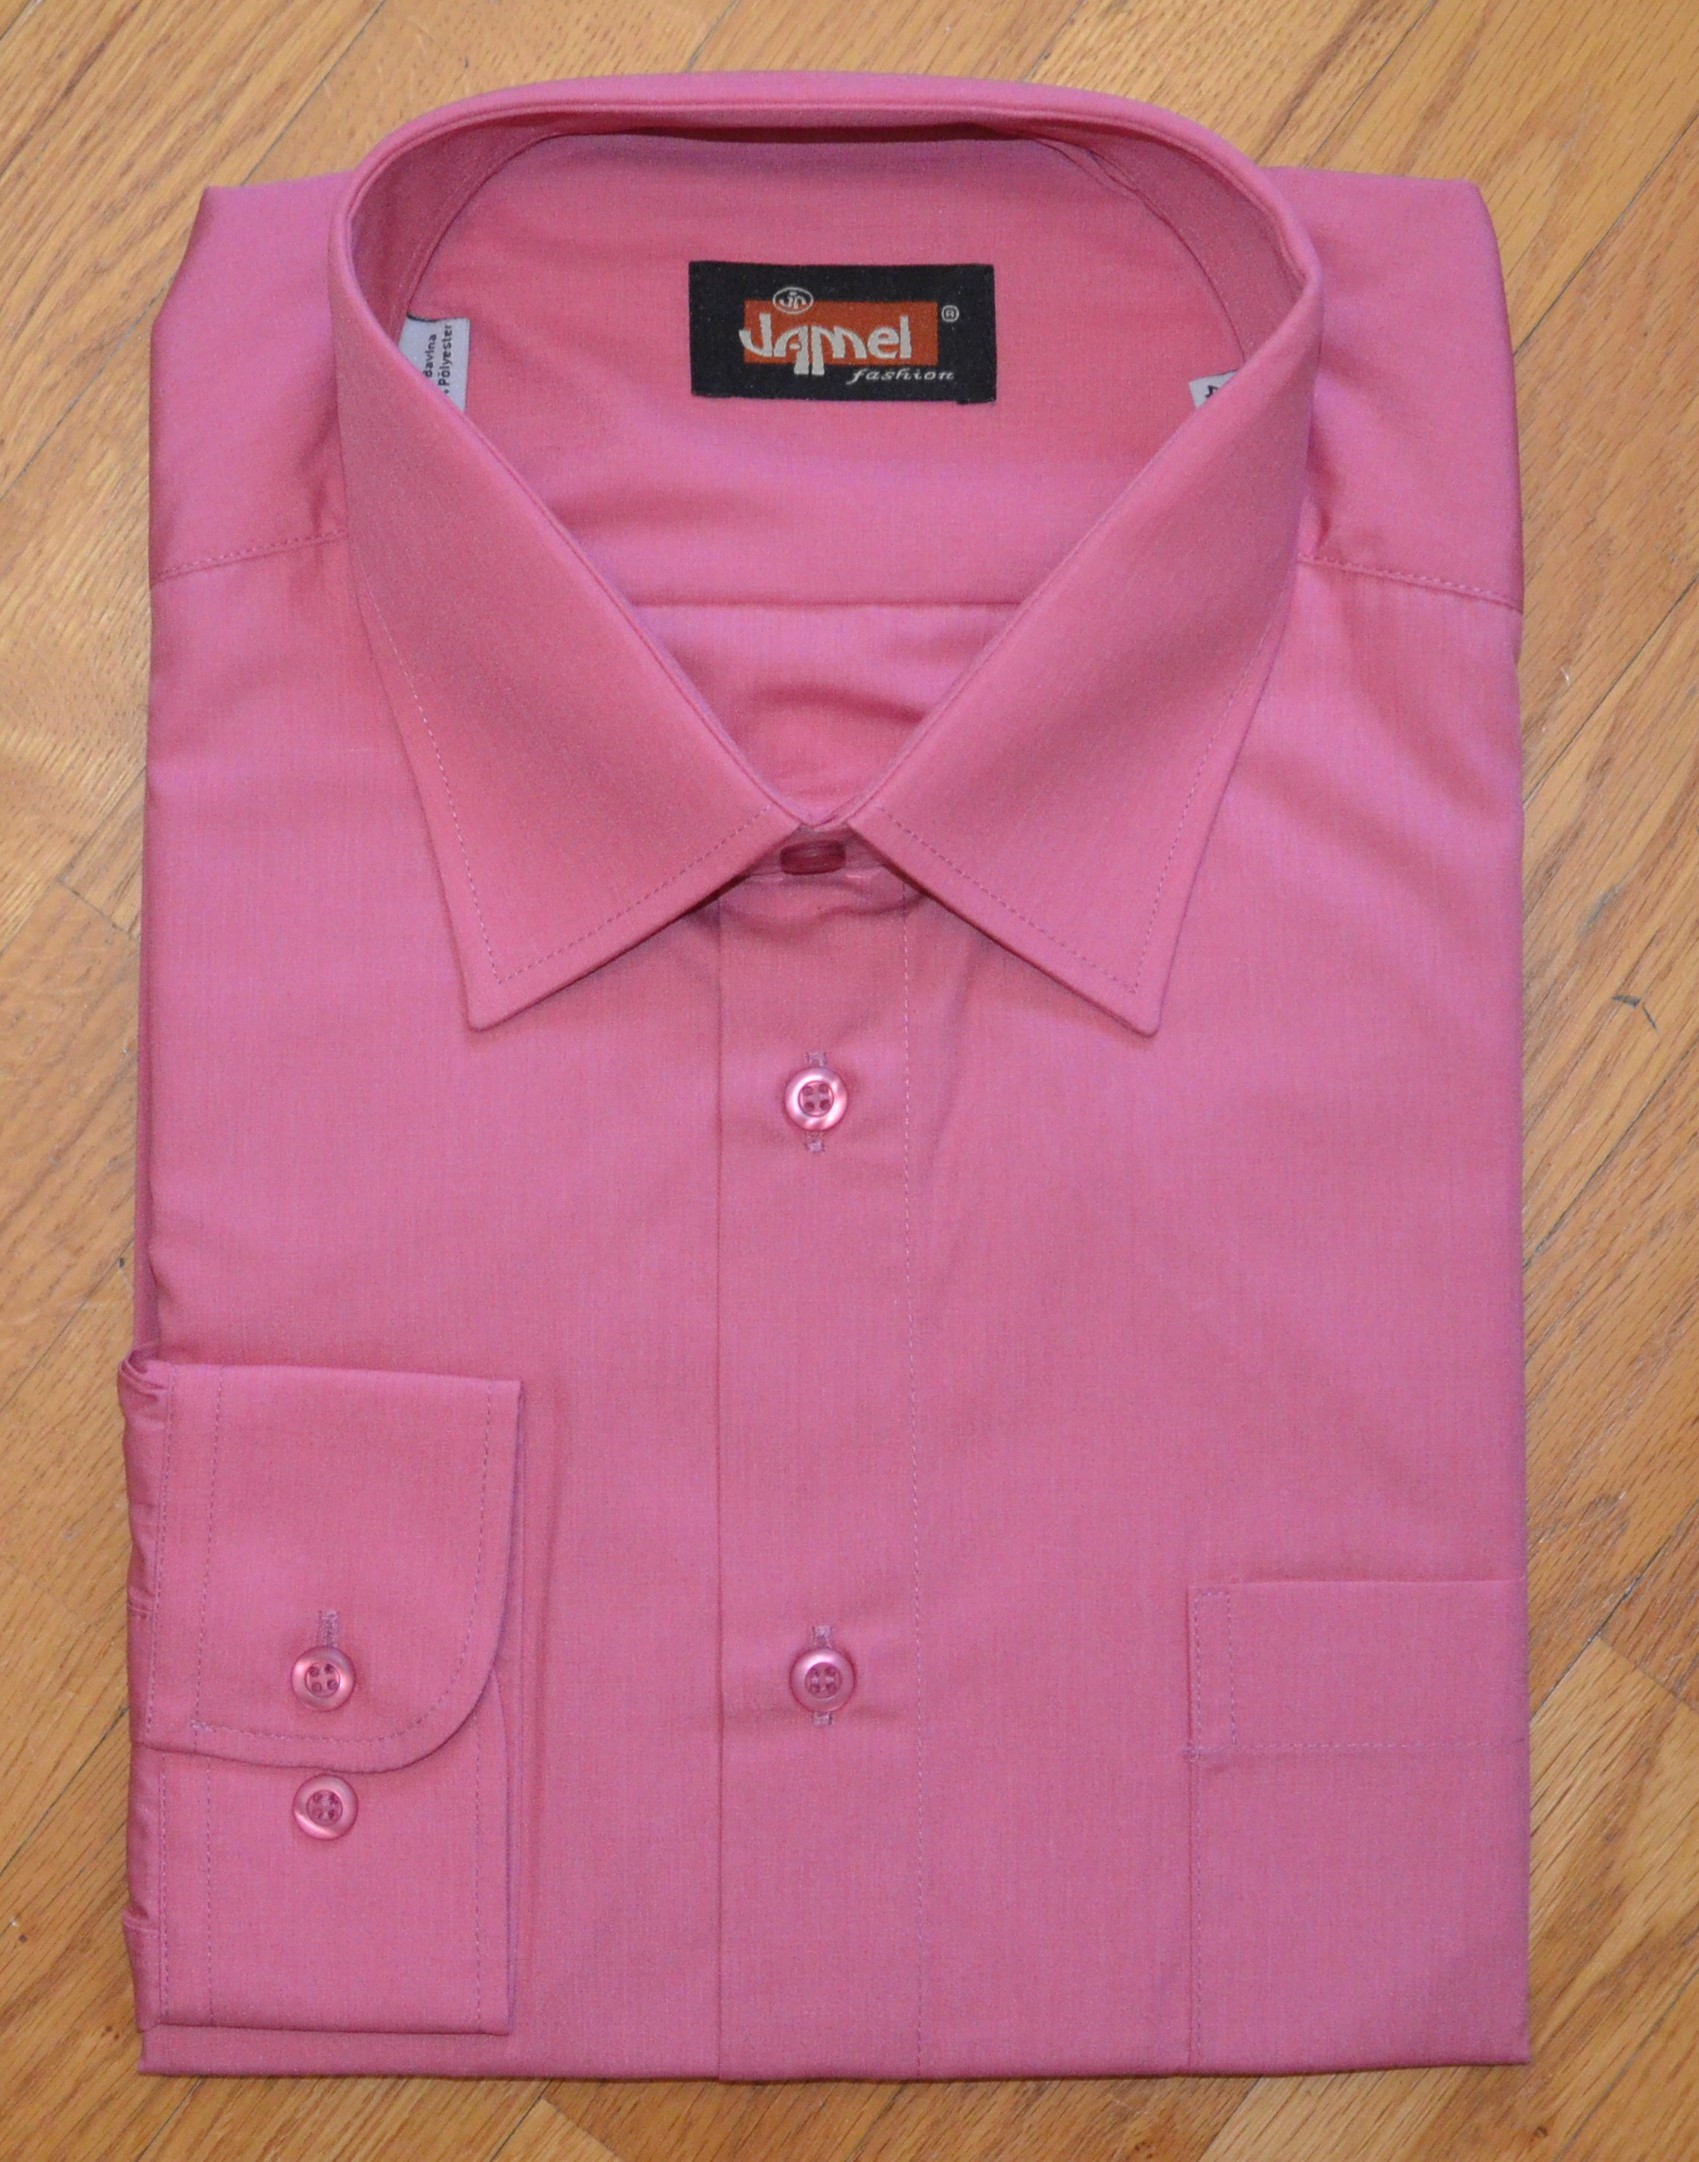 Pánská košile dlouhý rukáv Jamel Fashion růžová Velikost: 45